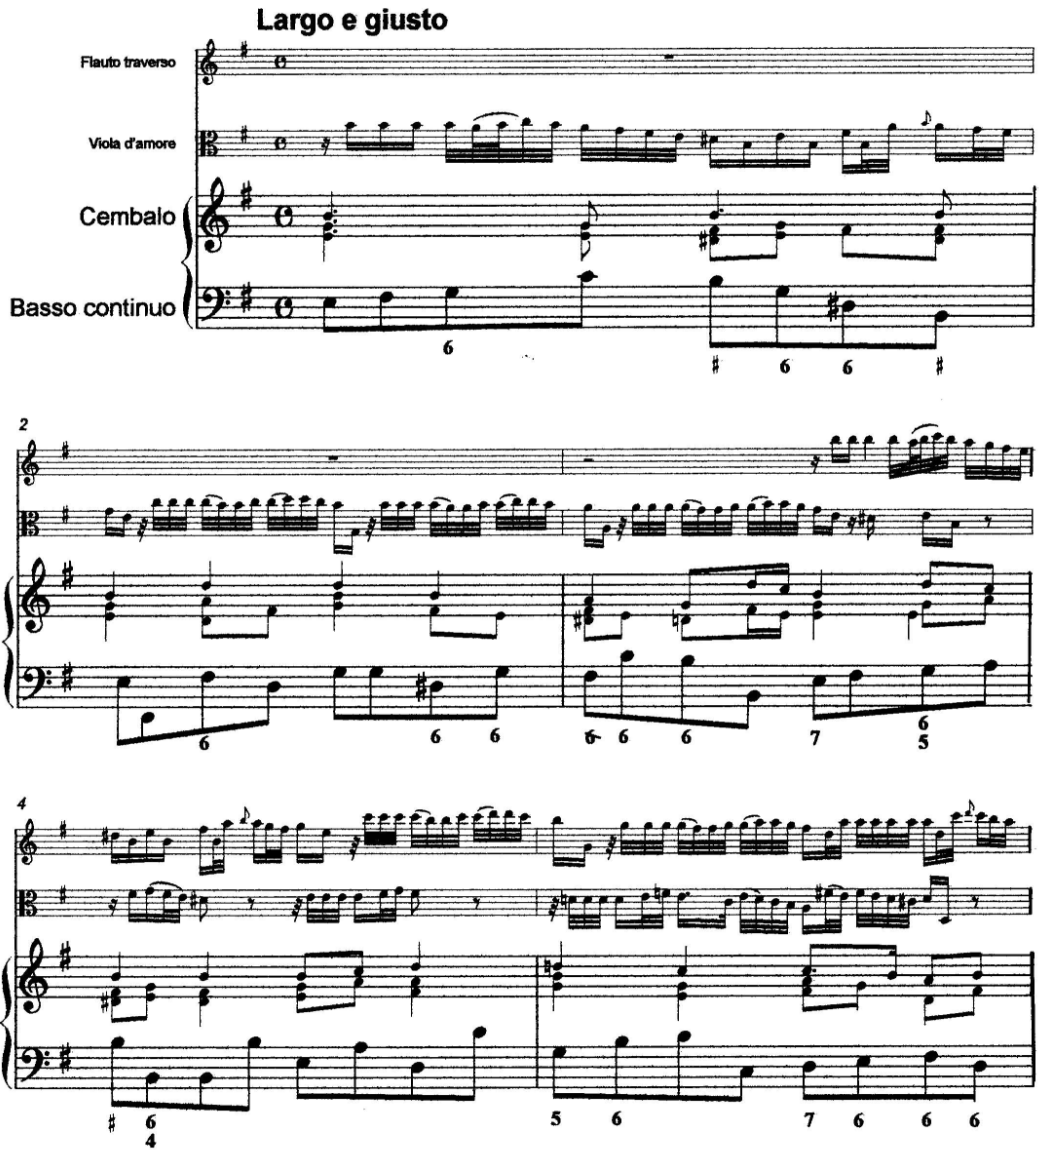 Christoph Graupner trio e moll flauto traverso, viola d'amore, cembalo